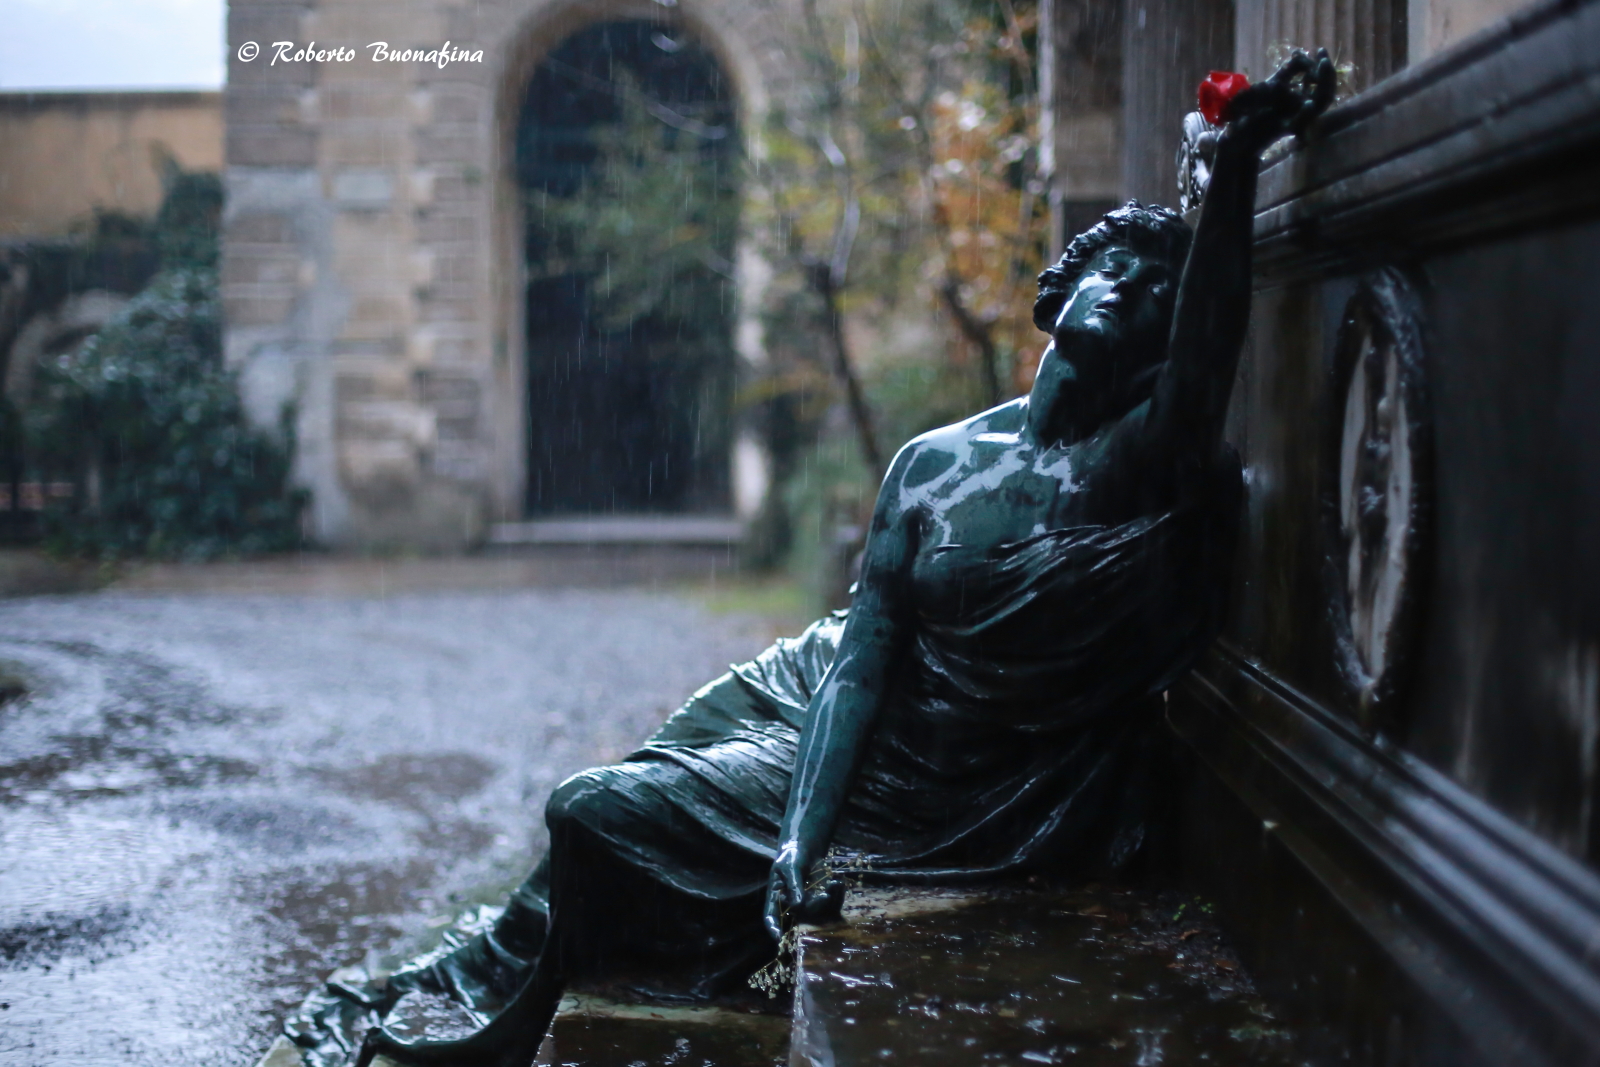 Staglieno - A rainy day ...